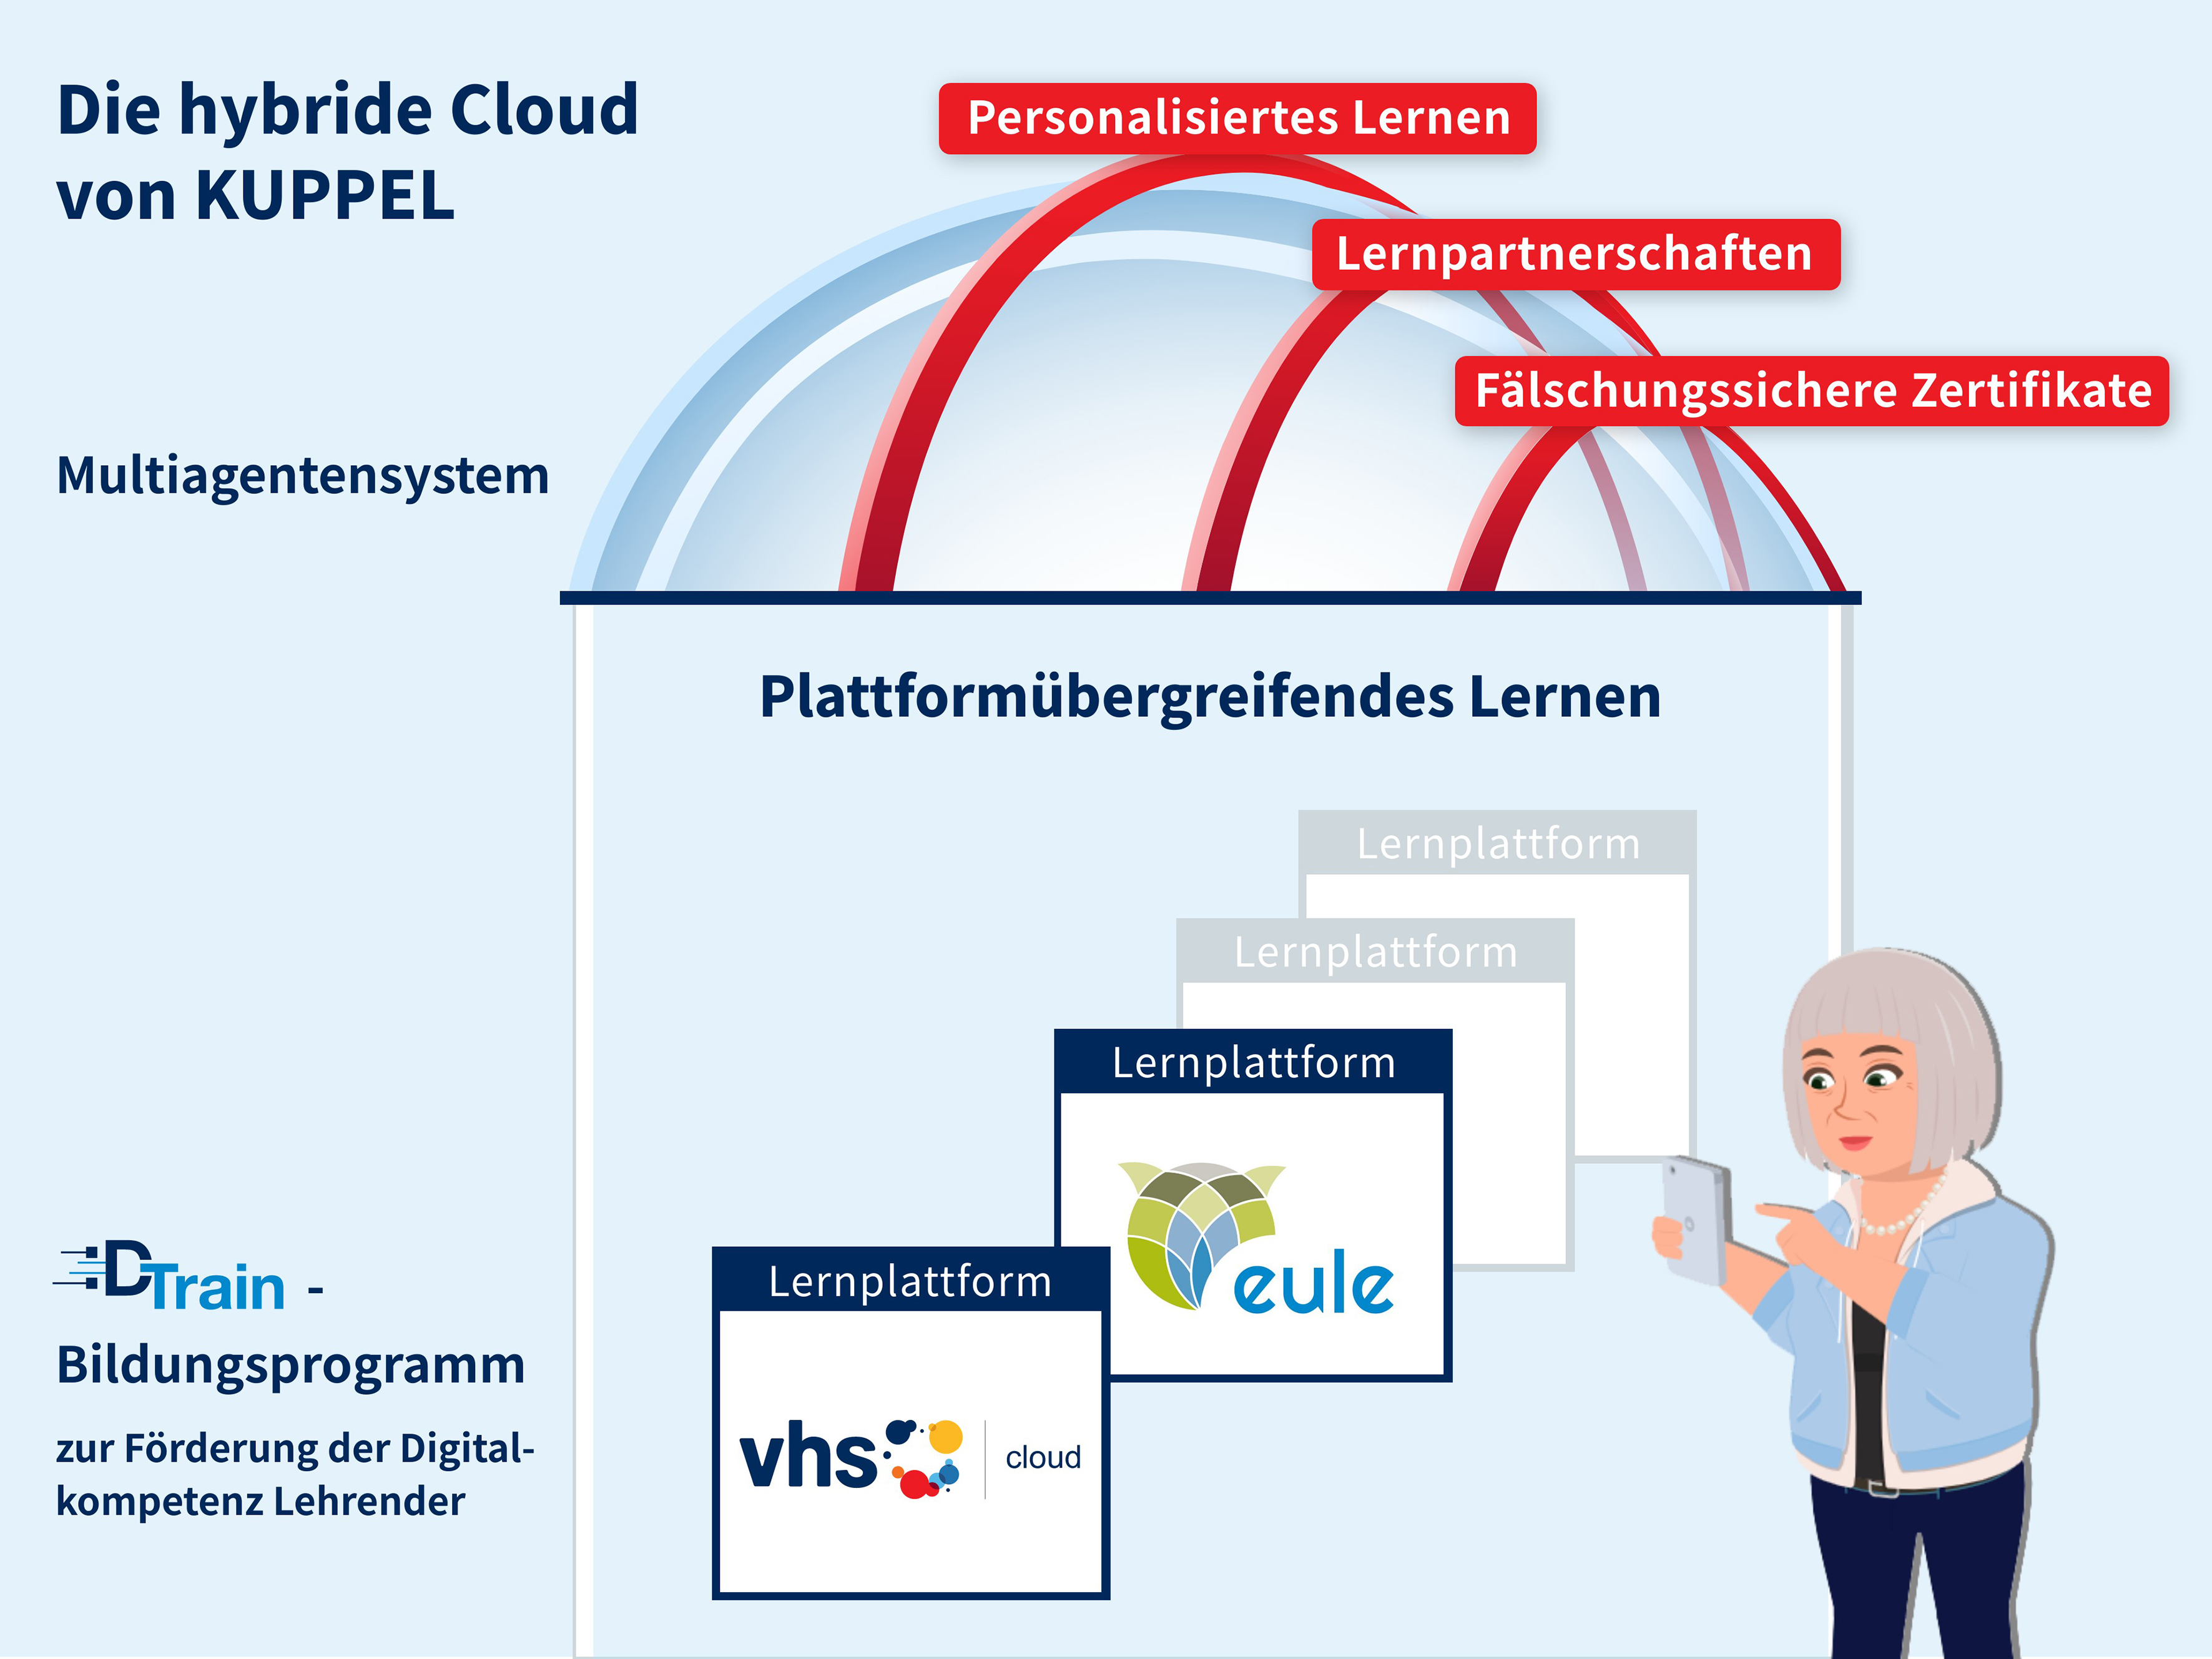 Illustration mit Text: Die hybride Cloud von KUPPEL - Multiagentensystem. Bietet plattformübergreifendes Lernen und ermöglicht personalisiertes Lernen, Lernpartnerschaften und fälschungssichere Zertifikate.